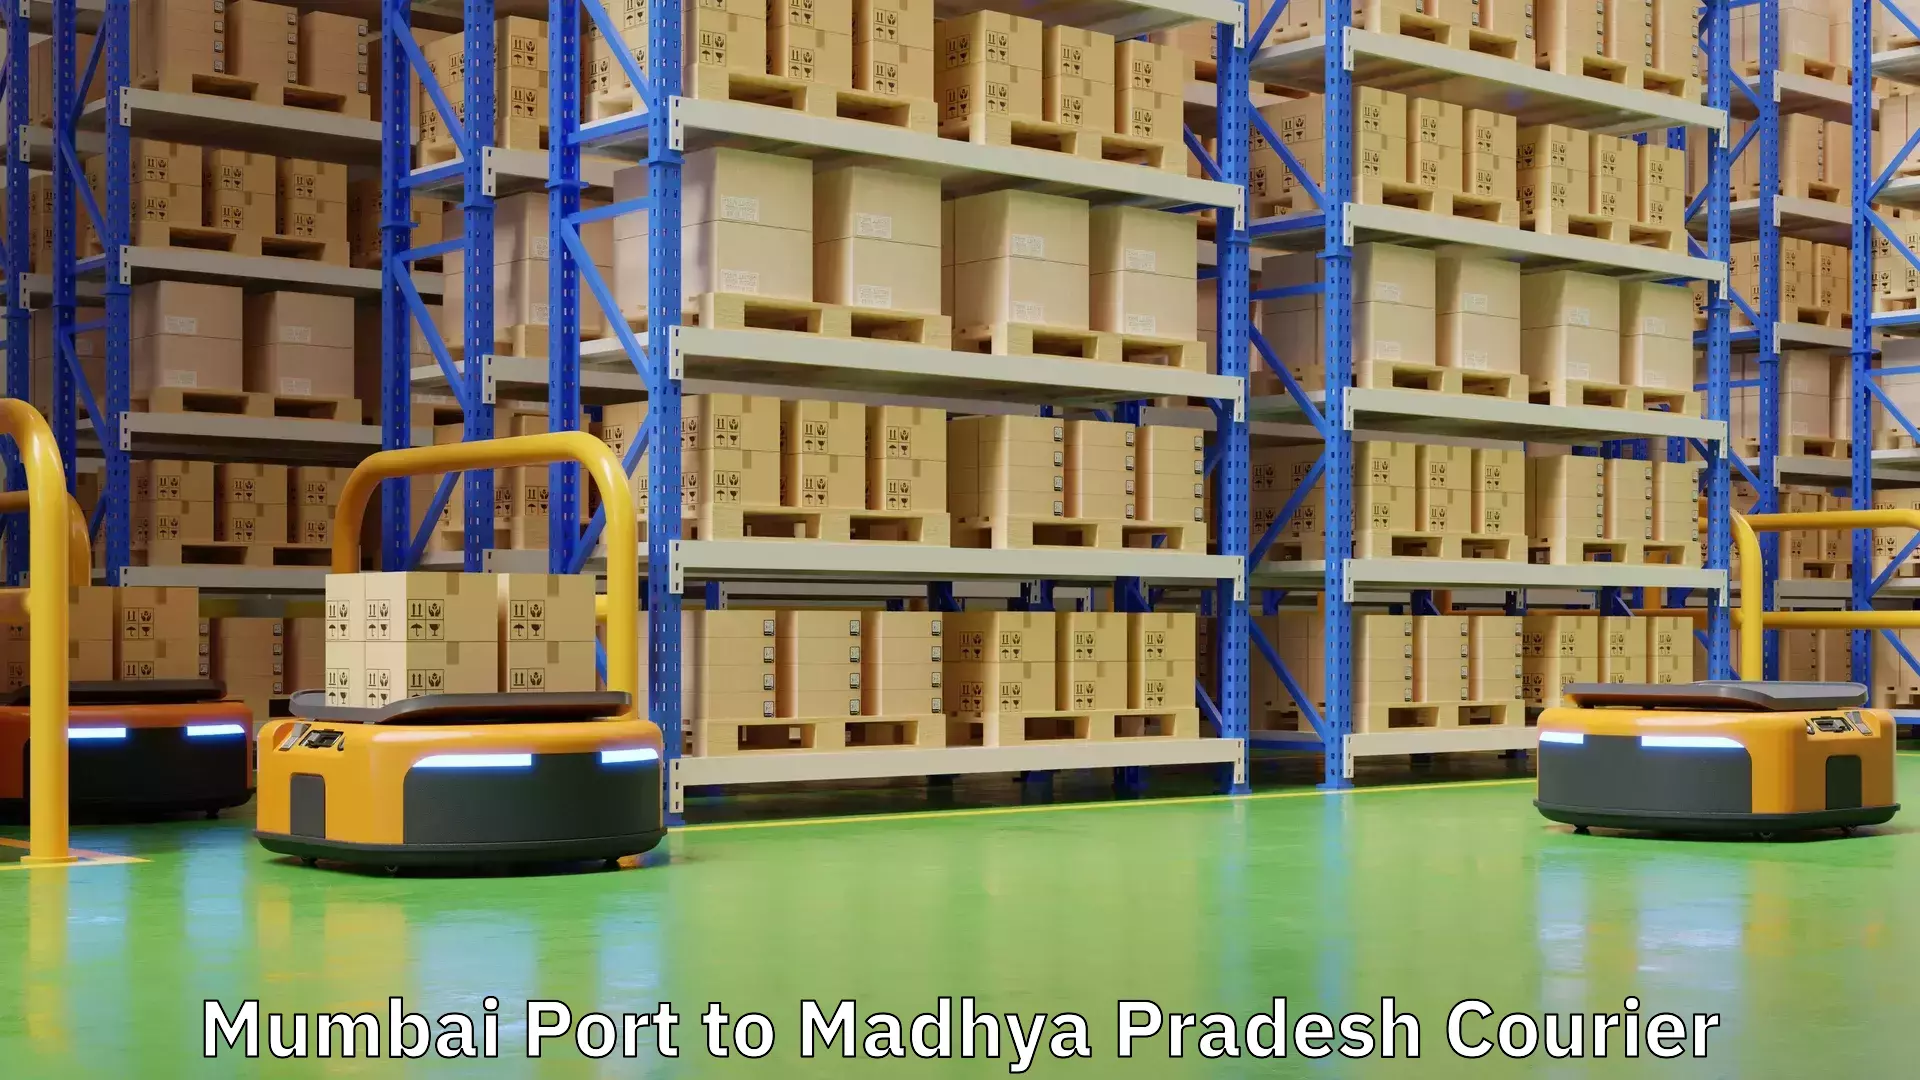 Fragile item shipping Mumbai Port to Madhya Pradesh